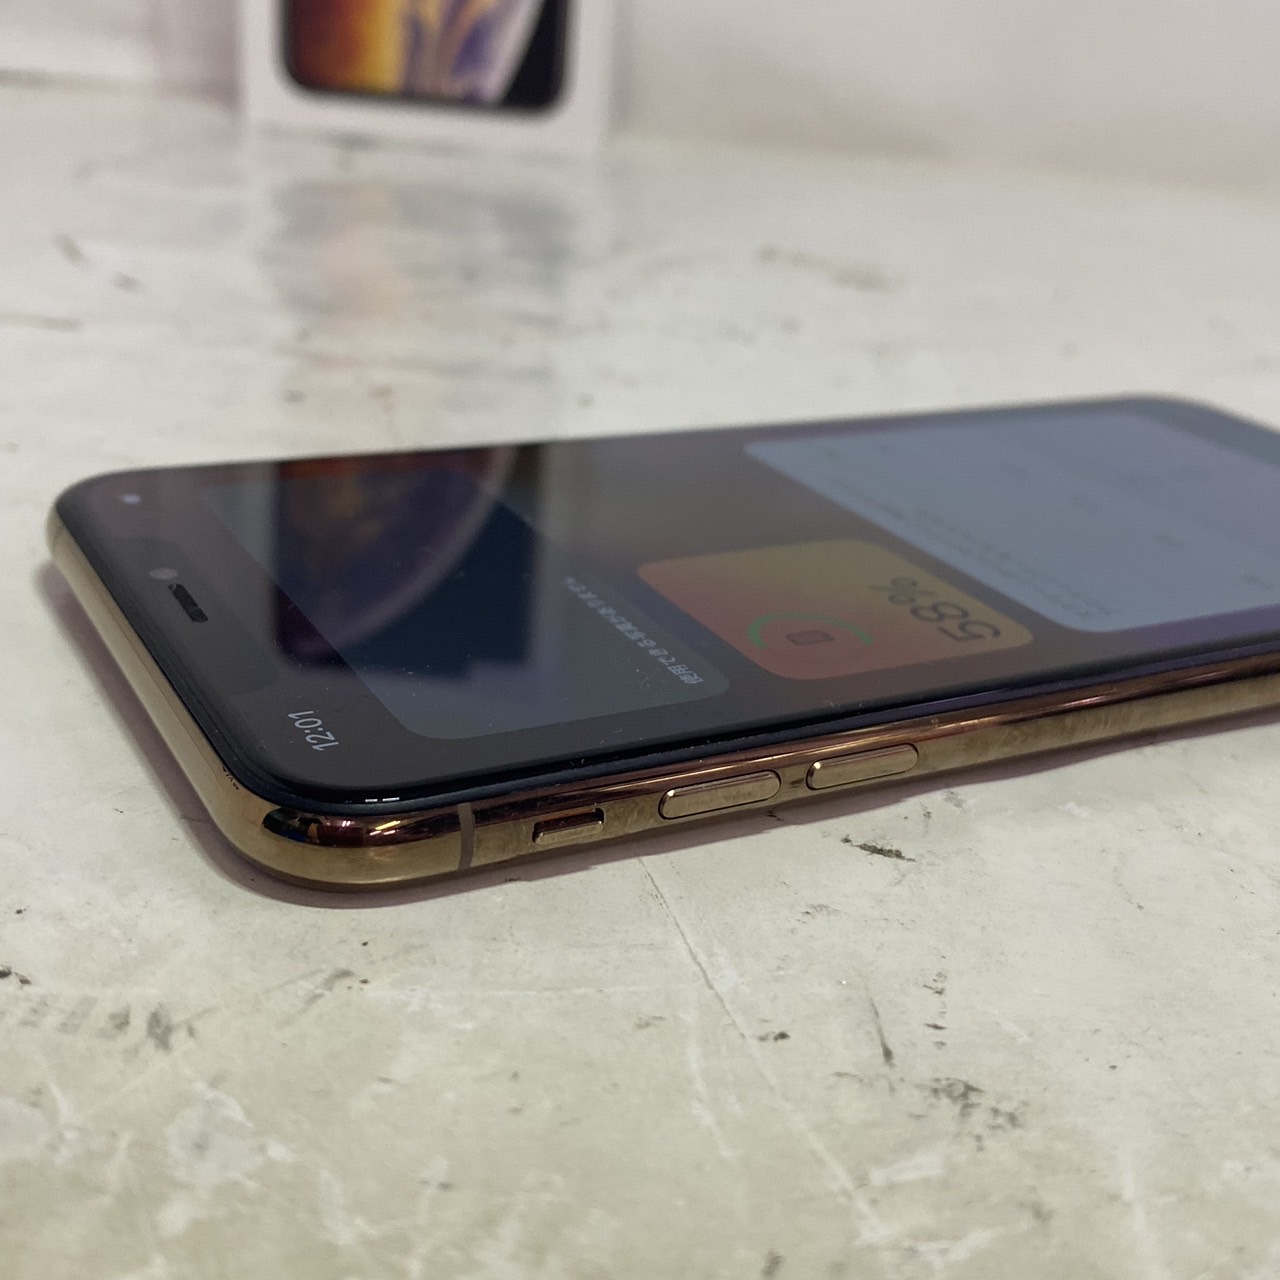 APPLE(アップル) iPhone XS Max 64GB SIMフリー [ゴールド]の激安通販